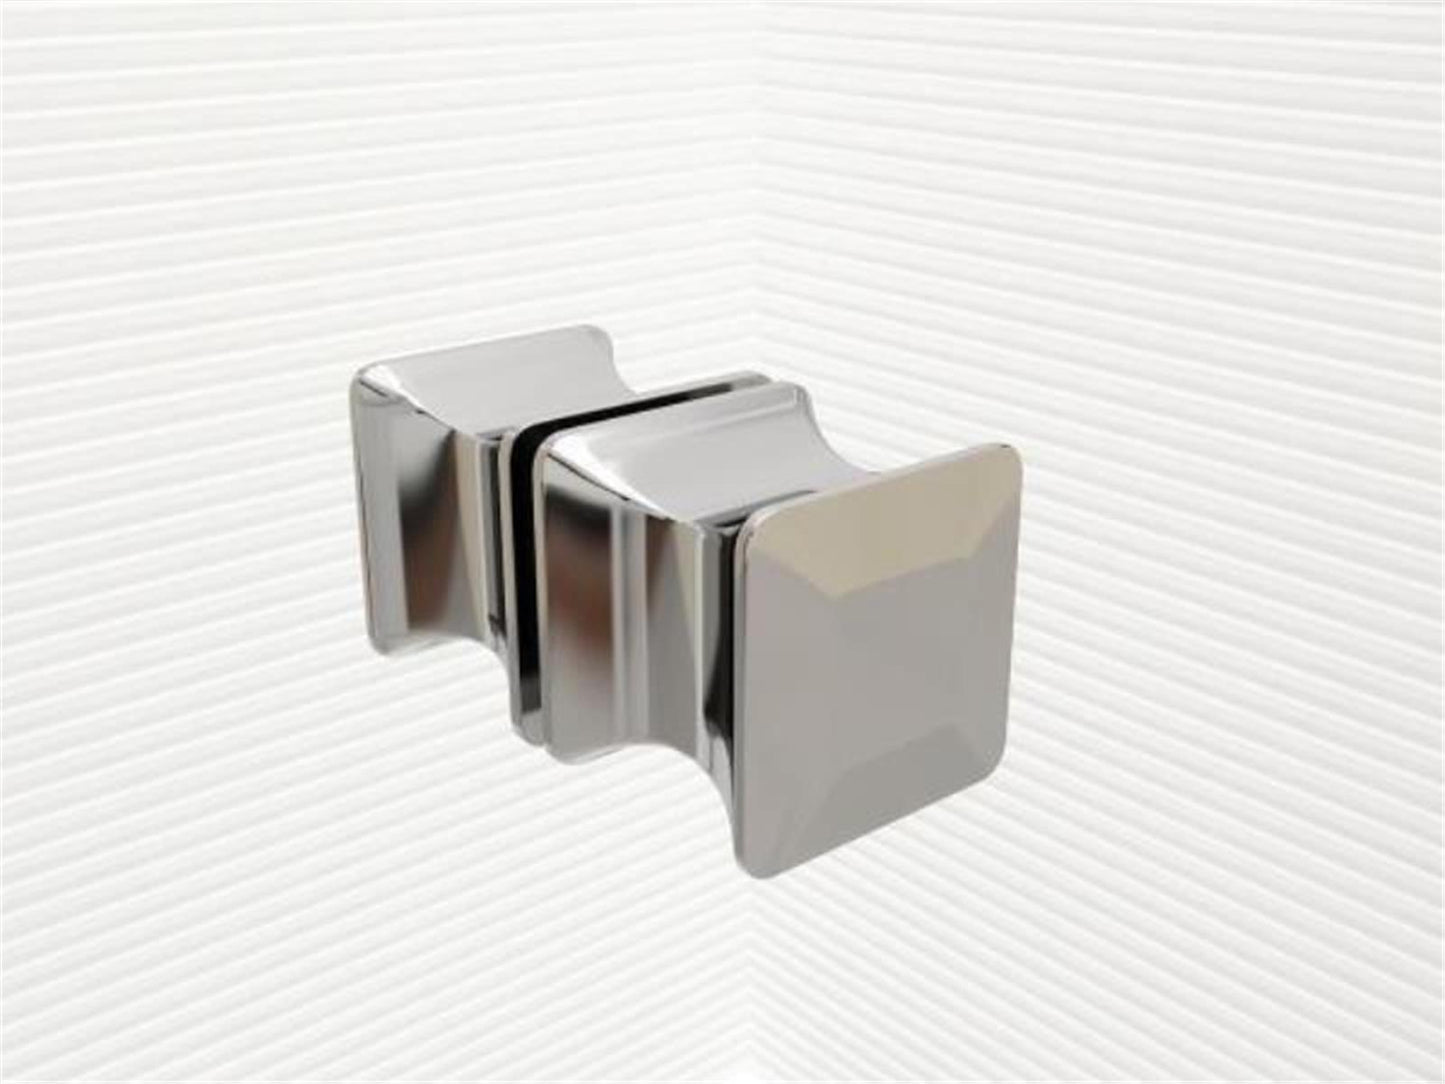 GlasHomeCenter - Cabine de douche en U "Asuka" (120x80x195cm) - 8mm - cabine de douche d'angle - cloison de douche - sans bac à douche